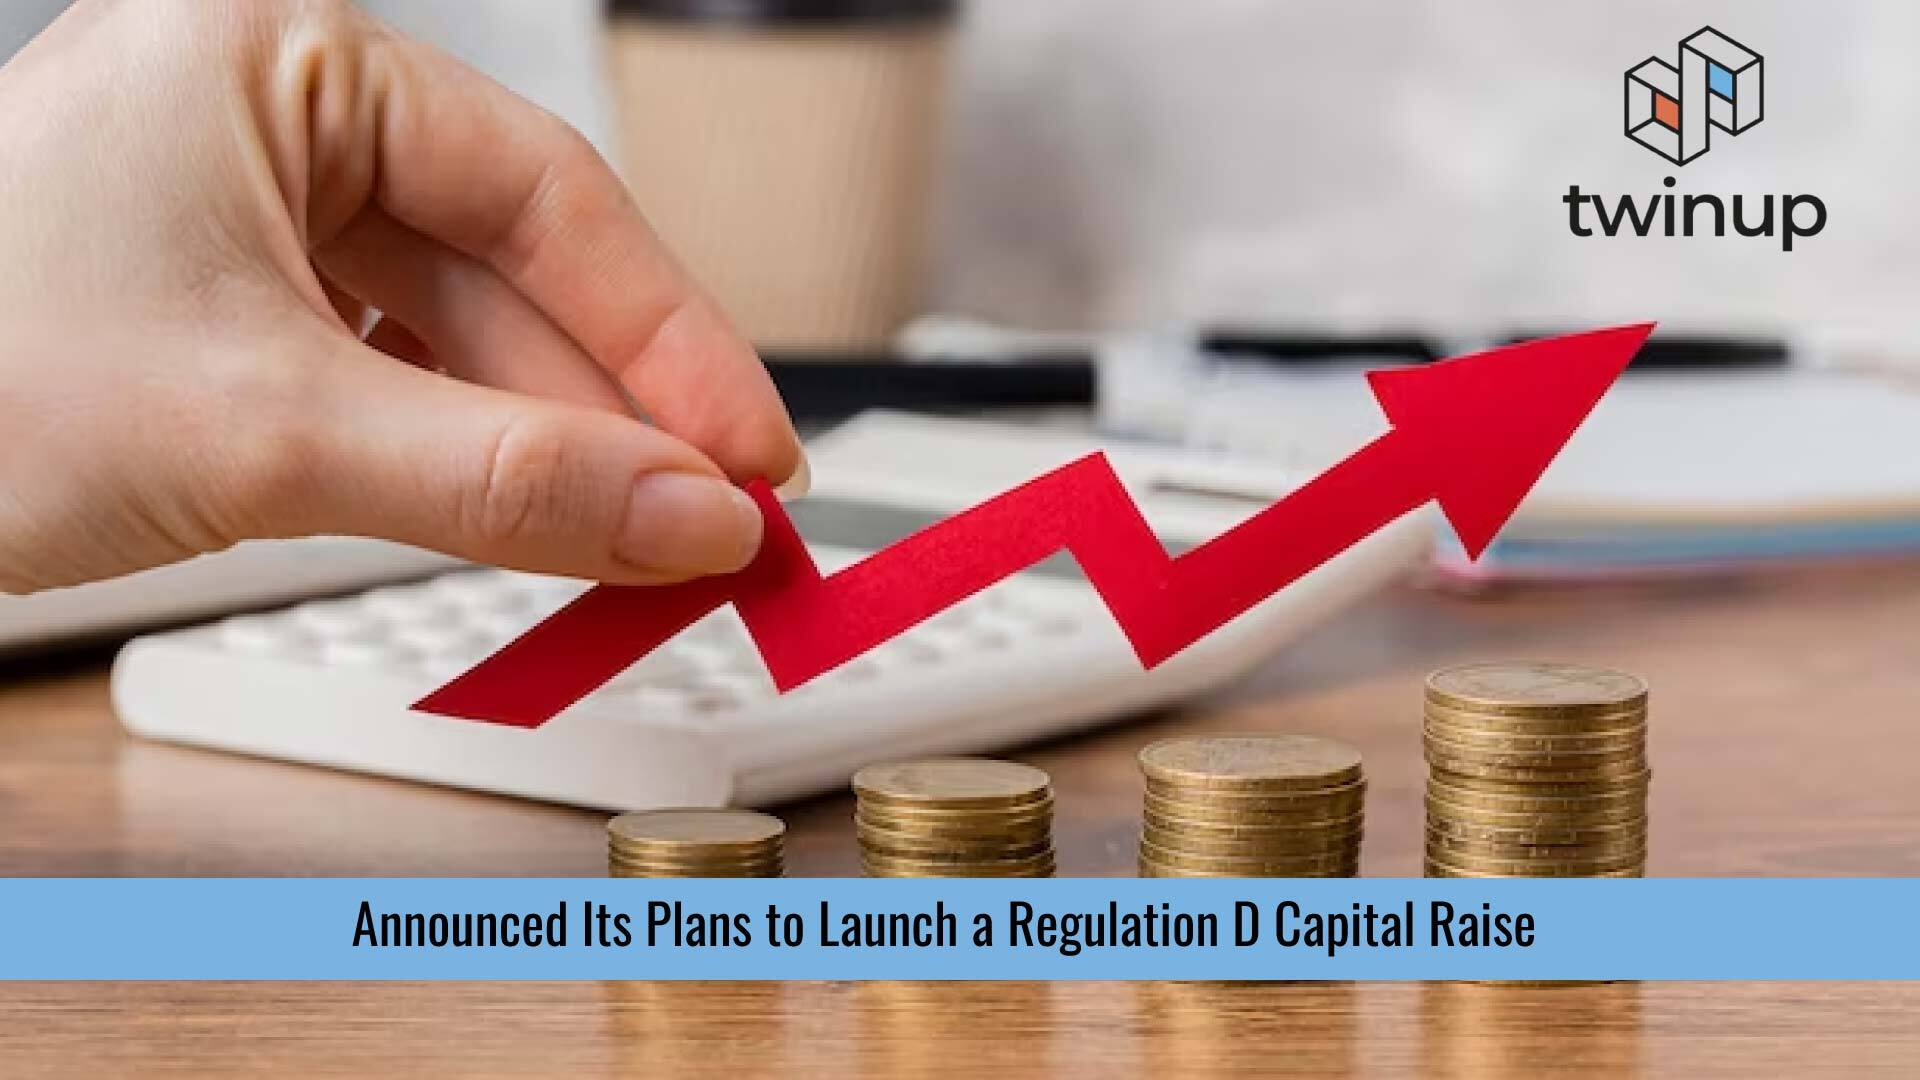 TwinUp Makes Plans for Reg D Capital Raise